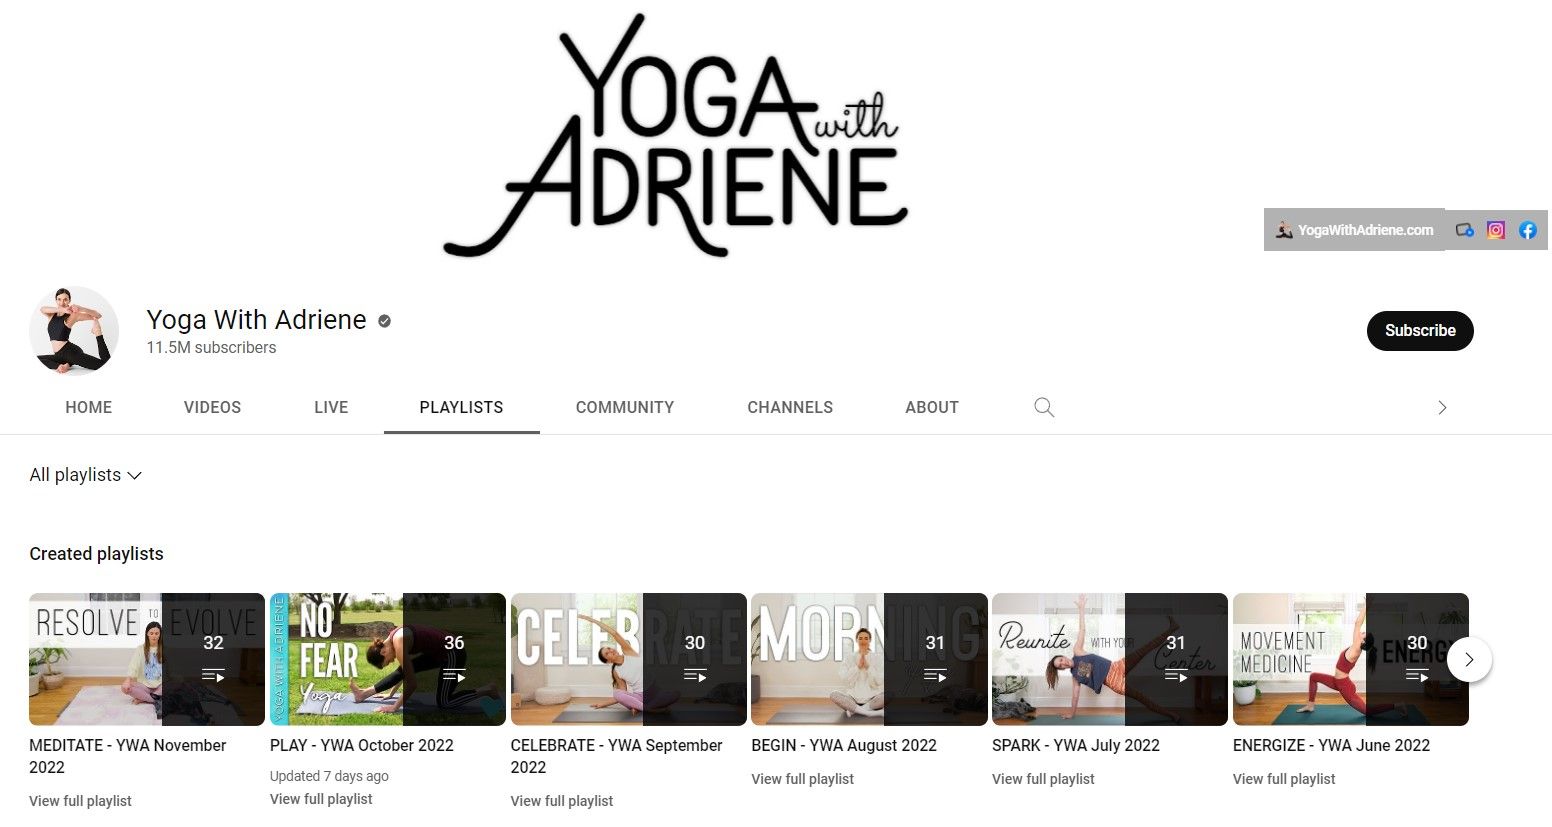 Captura de tela do canal do YouTube Yoga With Adriene